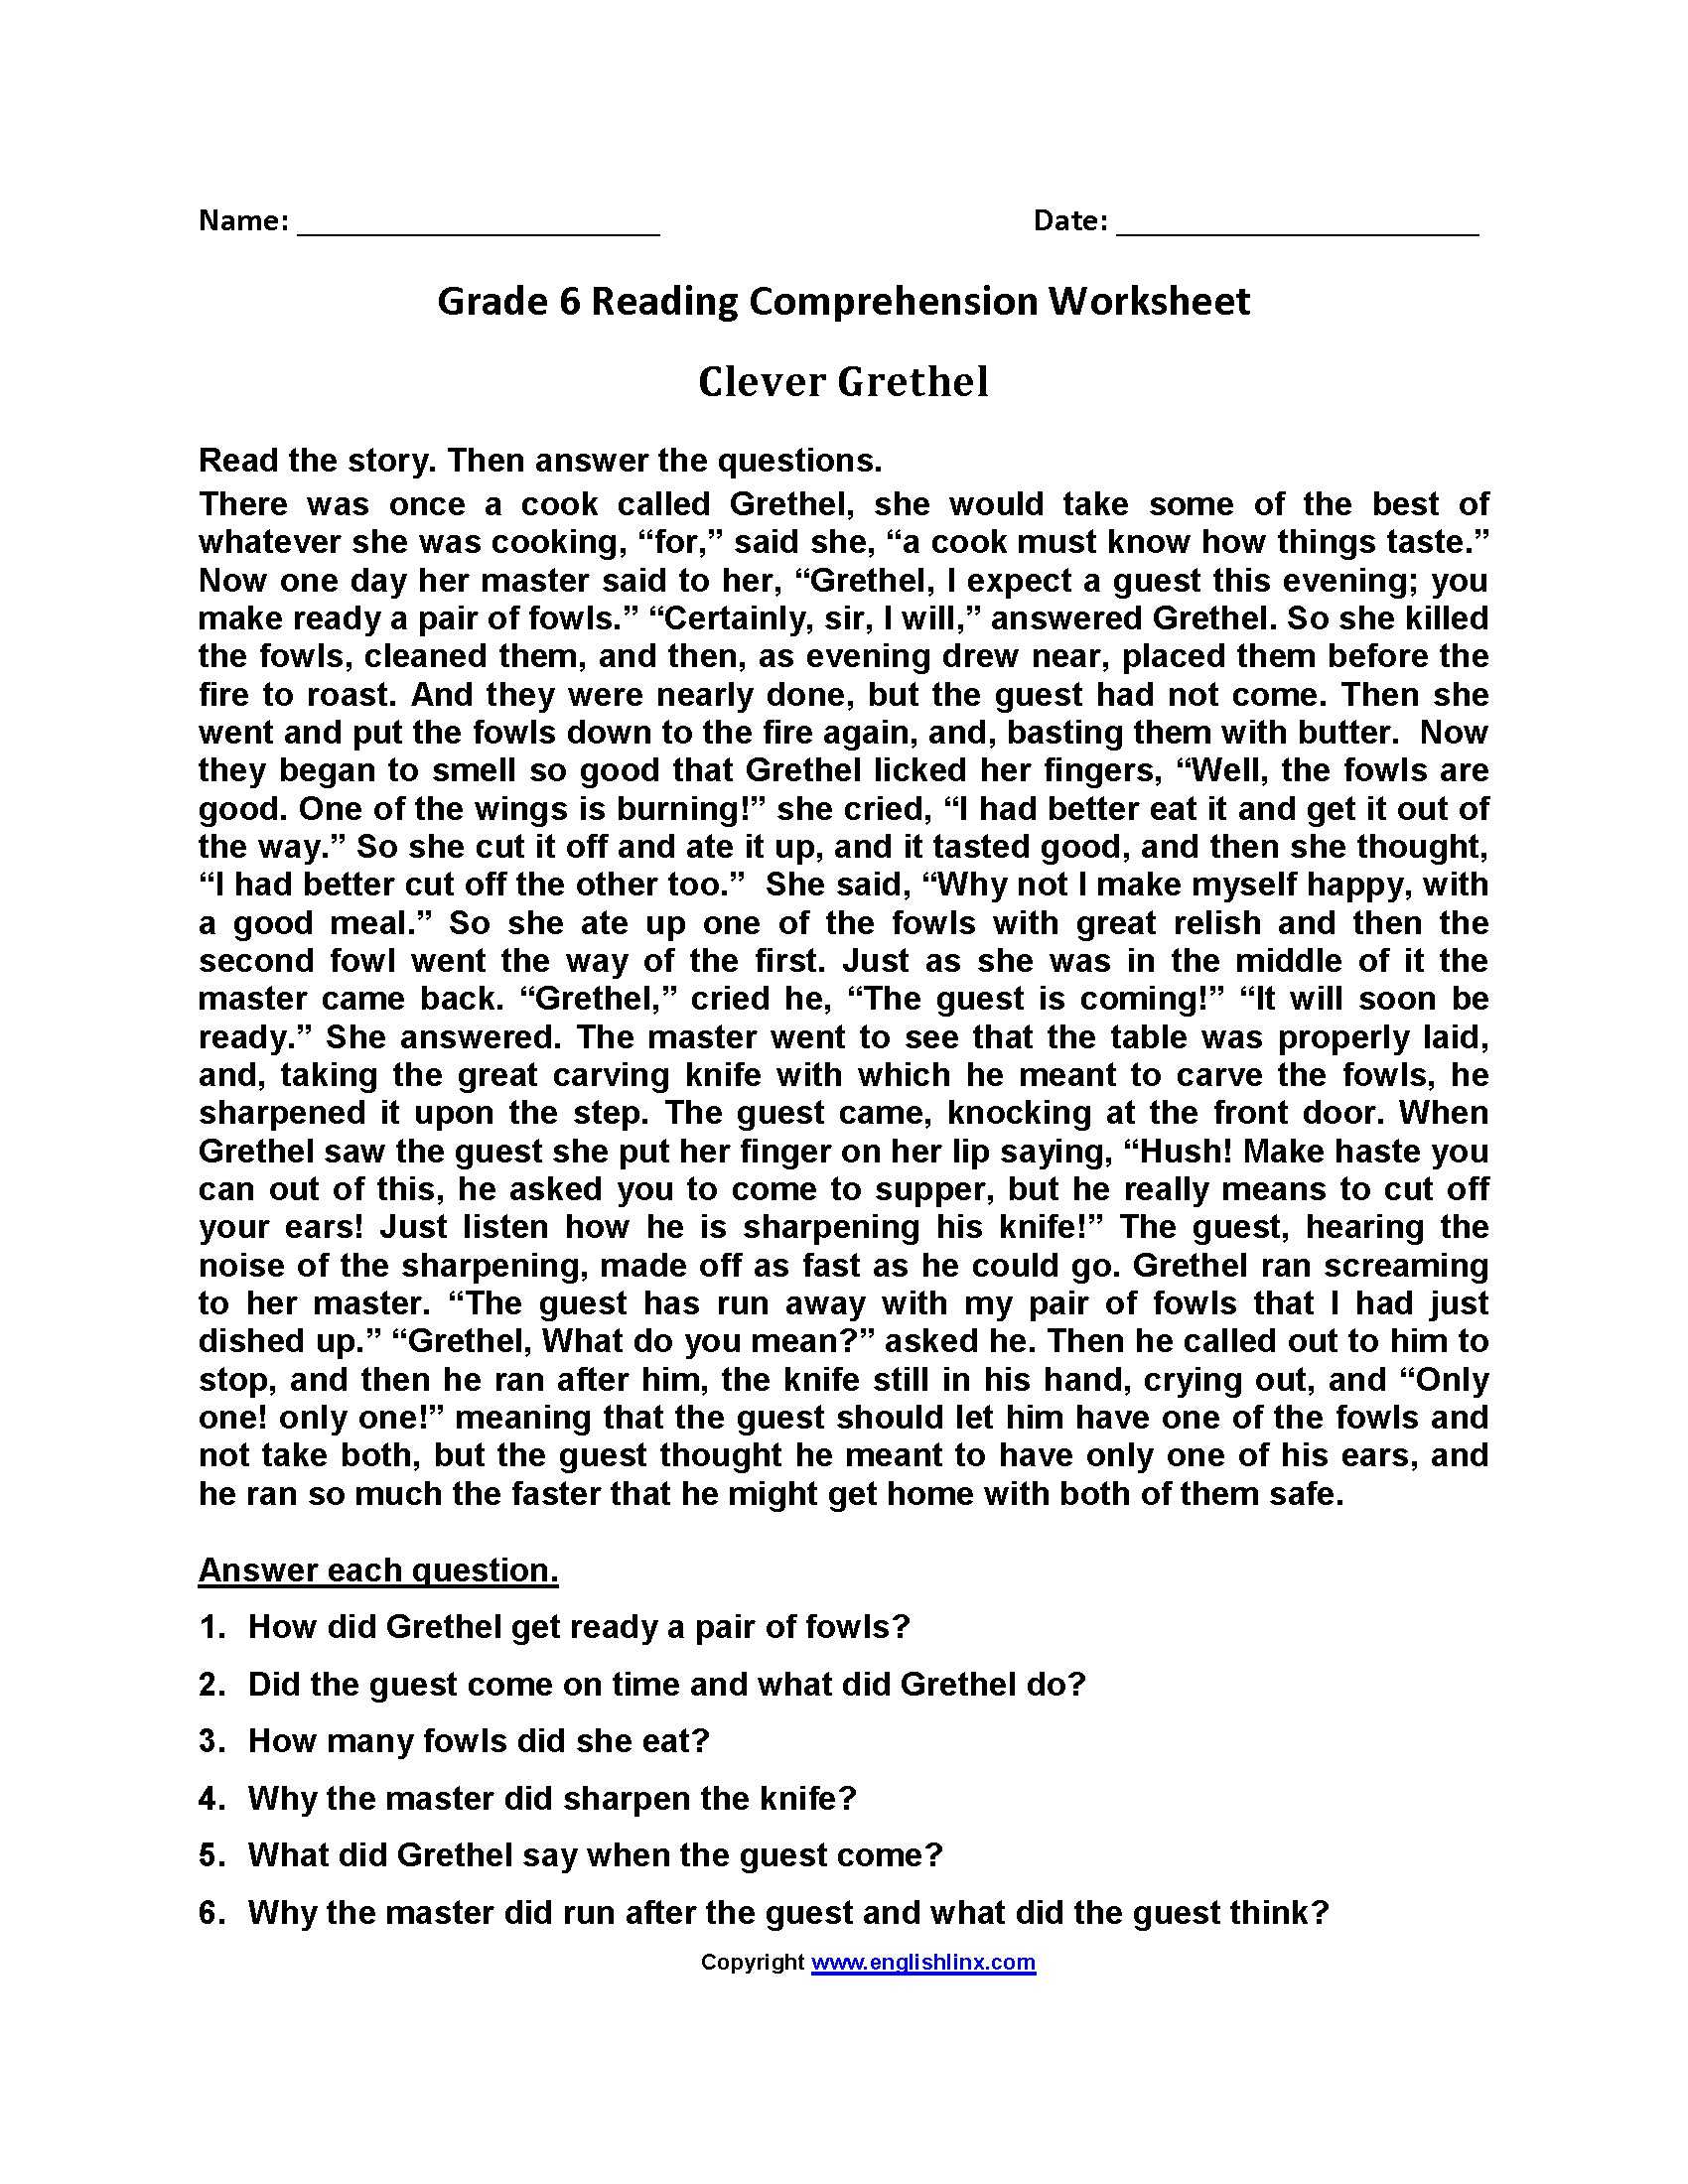 3rd Grade Reading Comprehension Worksheets Multiple Choice Along with Prehension Worksheets Level 6 Valid 6th Grade Reading Prehension